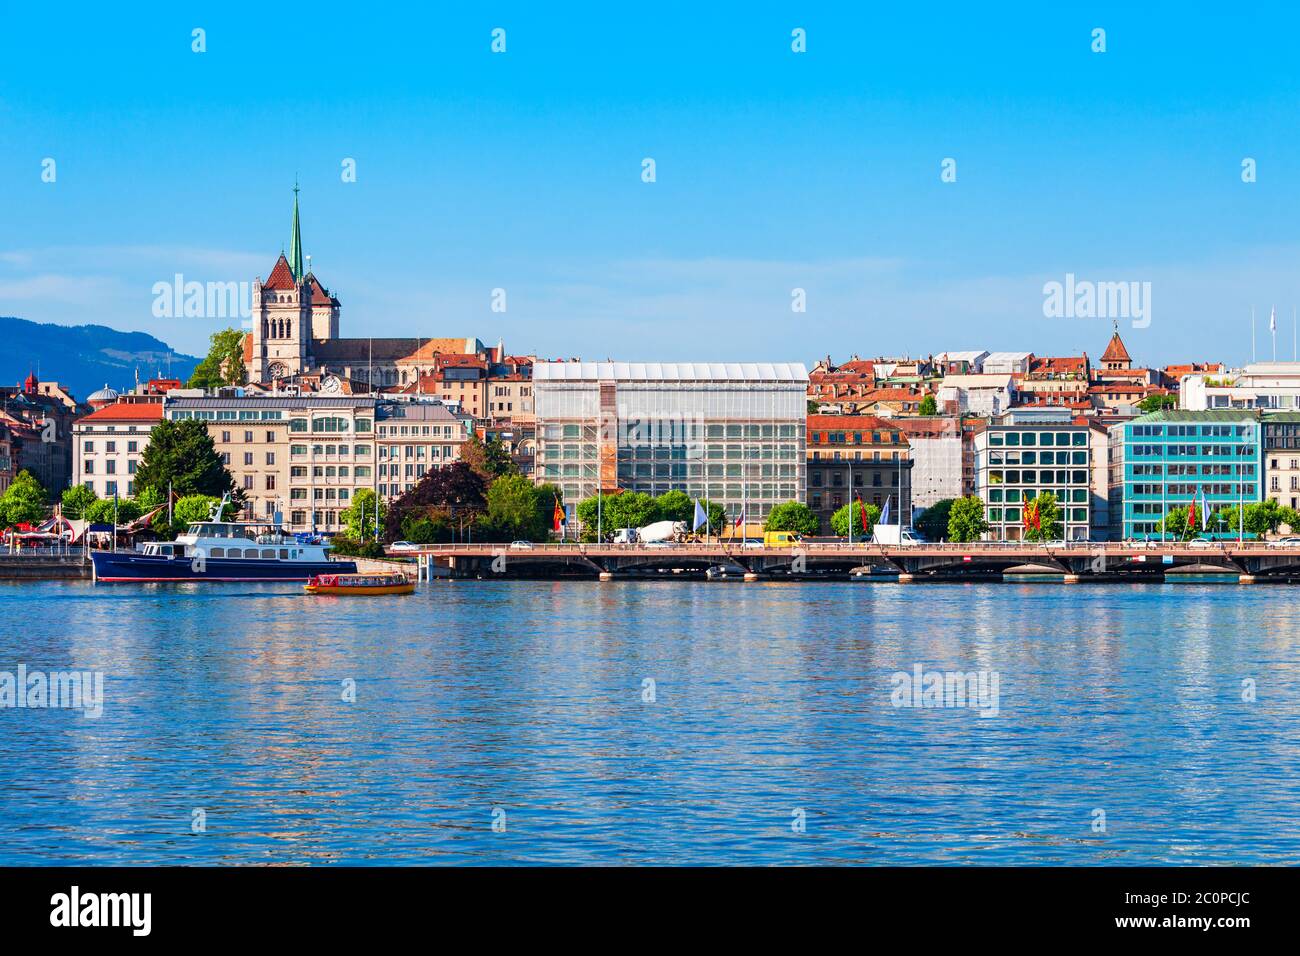 Città di Ginevra vista panoramica. Ginevra o Geneve è la seconda città più popolosa della Svizzera, situato sul Lago di Ginevra. Foto Stock